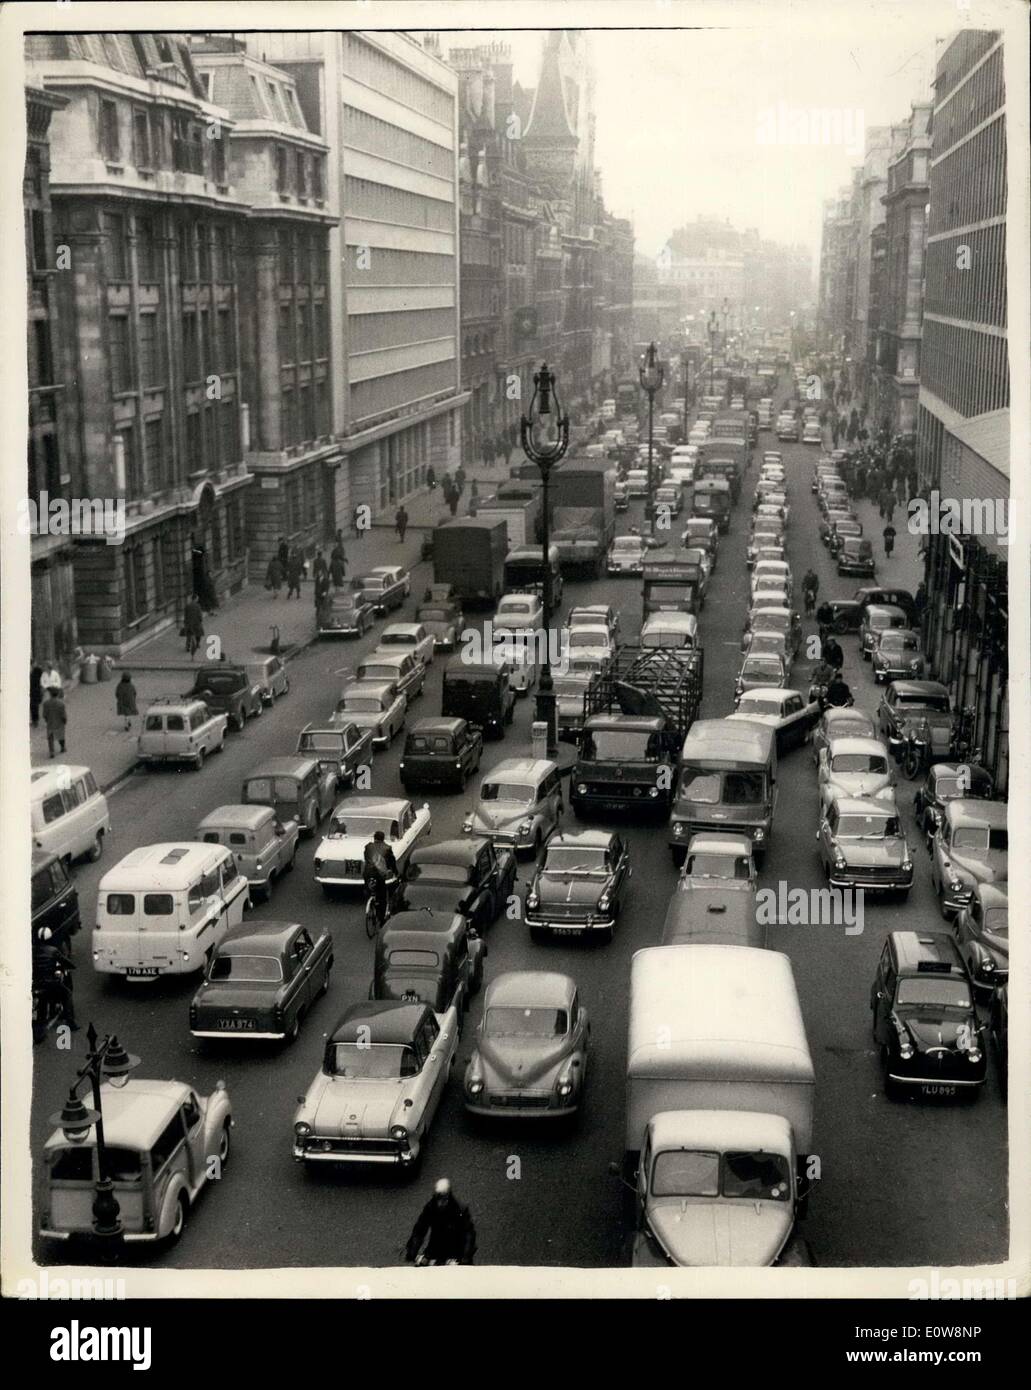 Le 29 janvier 1962 - les Londoniens Face long voyage de retour avec peu de Transport : Les conditions étaient cet après-midi à Londres chaotique comme beaucoup d'affronter le problème à la maison avec peu de transports publics disponibles en tant que travailleurs souterrains font la grève d'un jour et de nombreux arrêts de bus et les employés des chemins de fer sont également dans la sympathie. La photo montre le trafic lourd dans Farringdon Street (vue de HOLBORN VIADUCT) cet après-midi que le rush de retour a commencé plus tôt que d'habitude. Banque D'Images